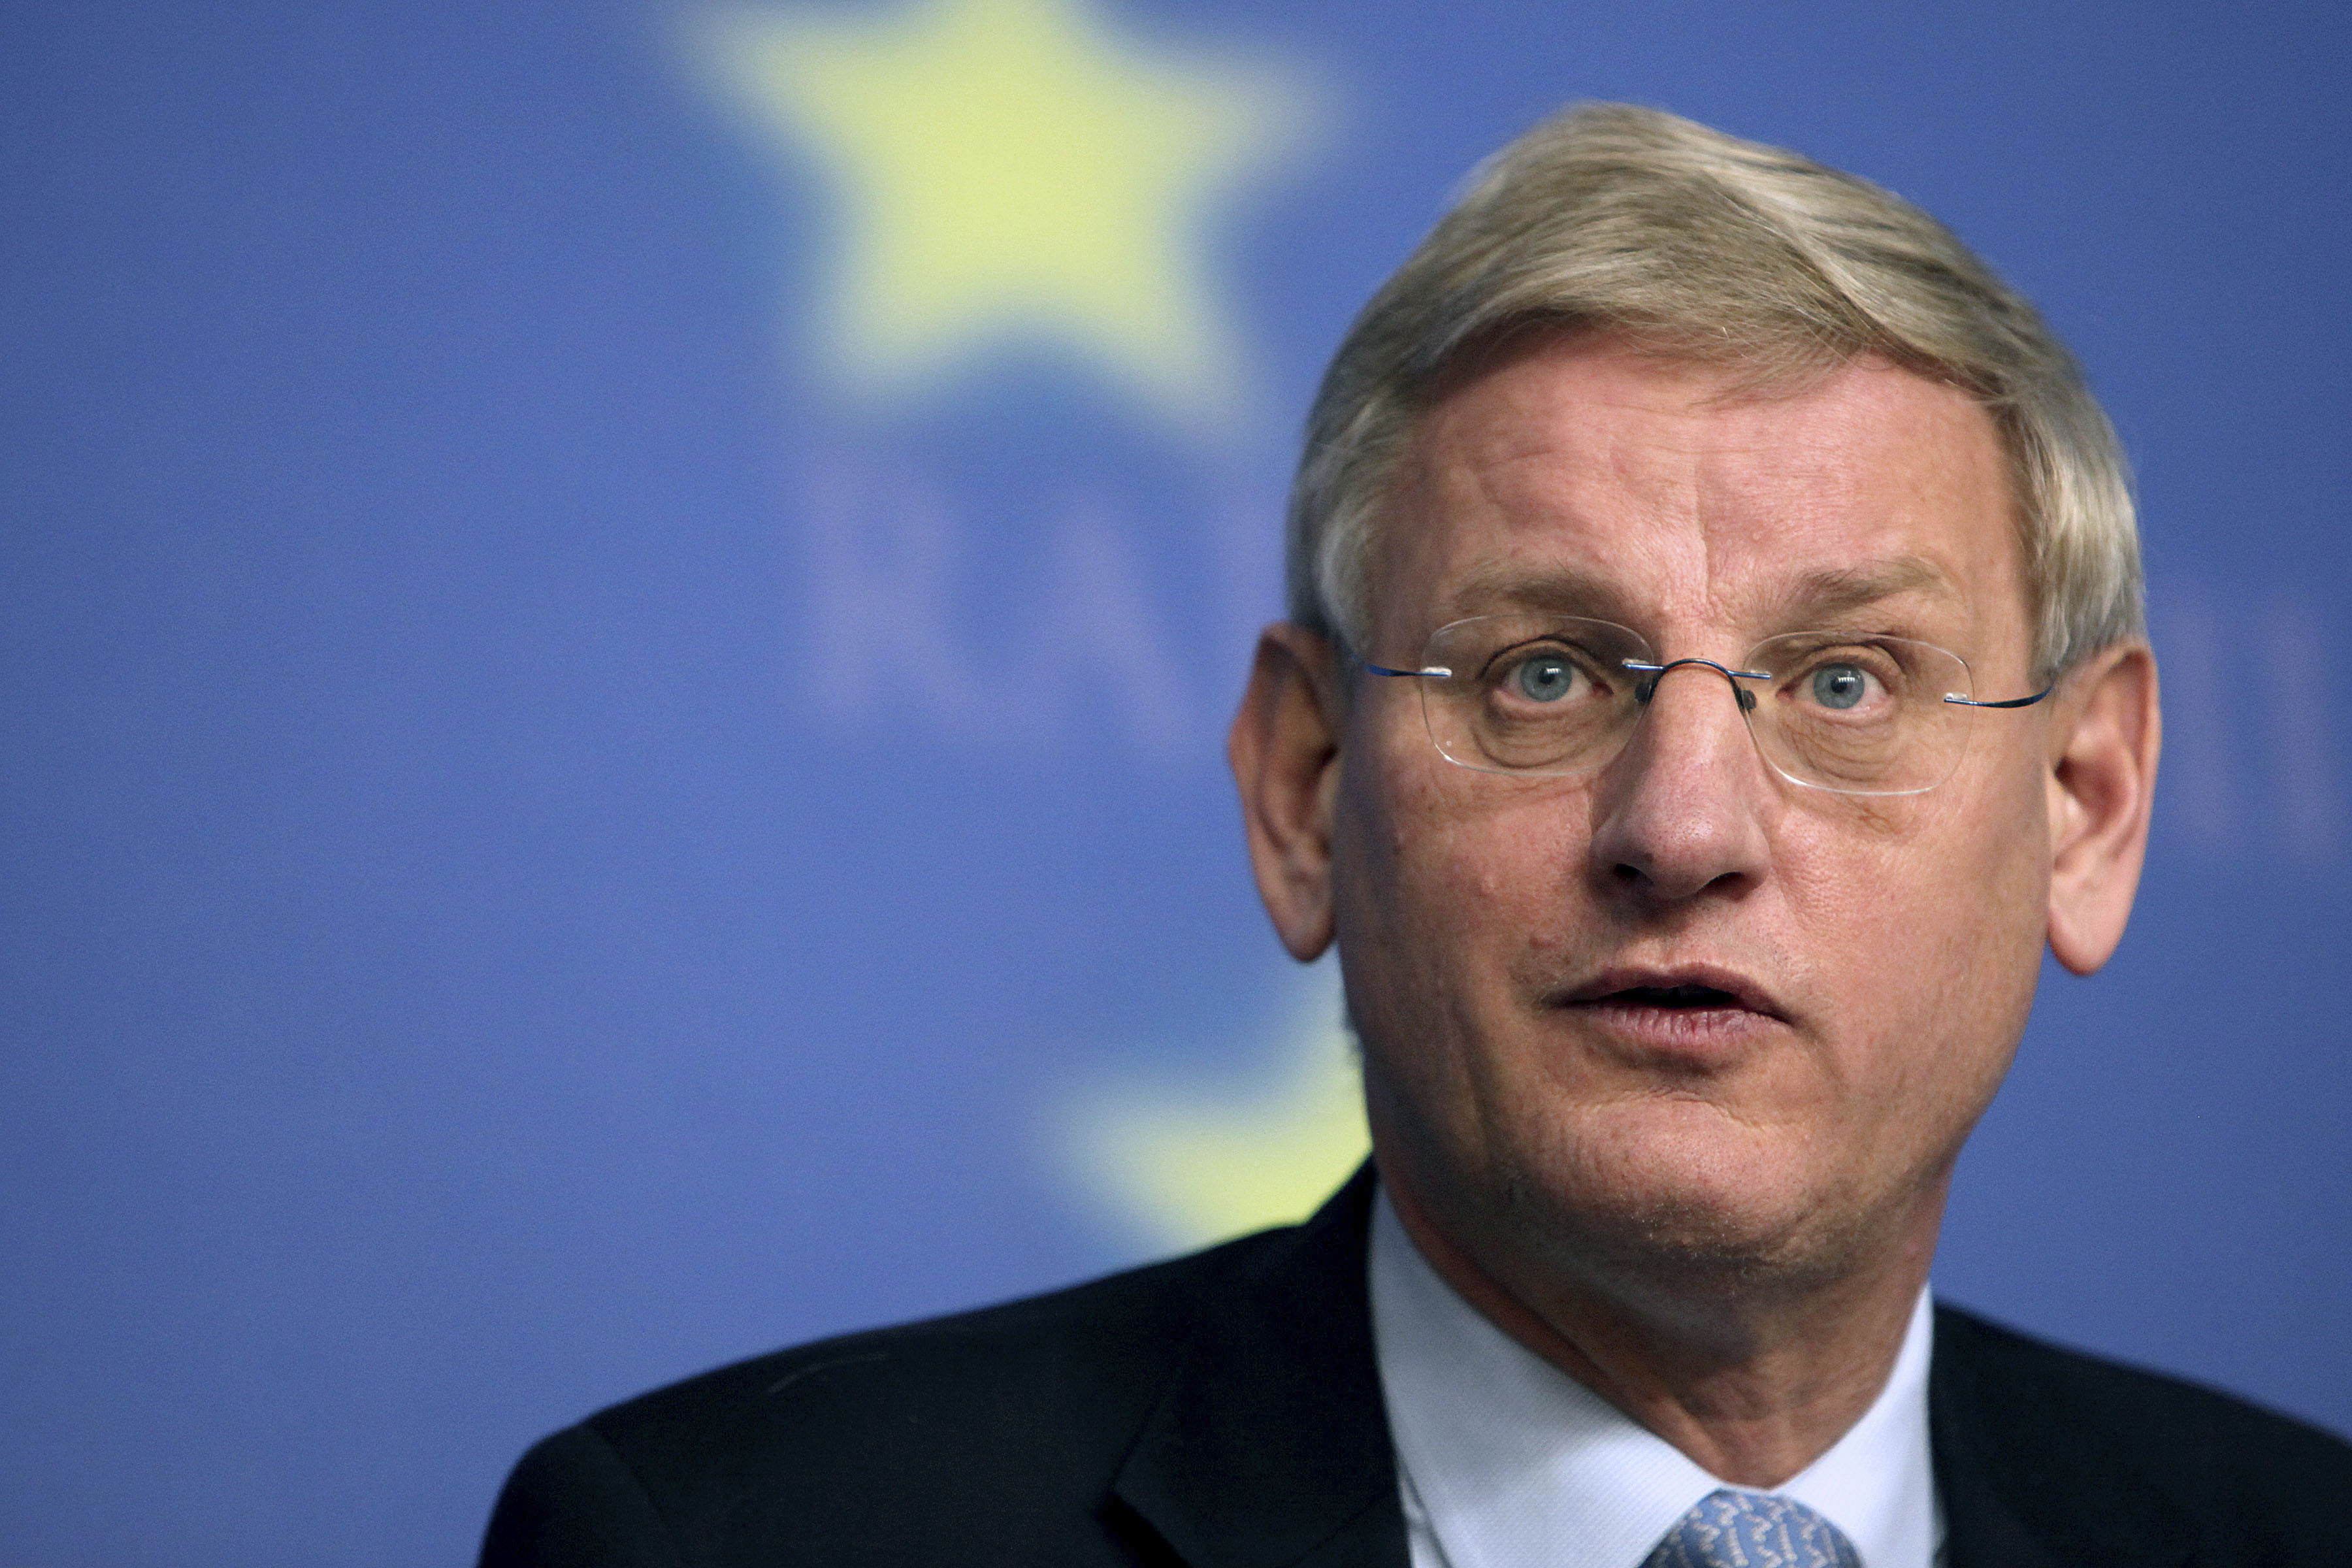 Carl Bildt beklagar beslutet och menar att det försvårar försoningsprocessen mellan turkar och armenier.